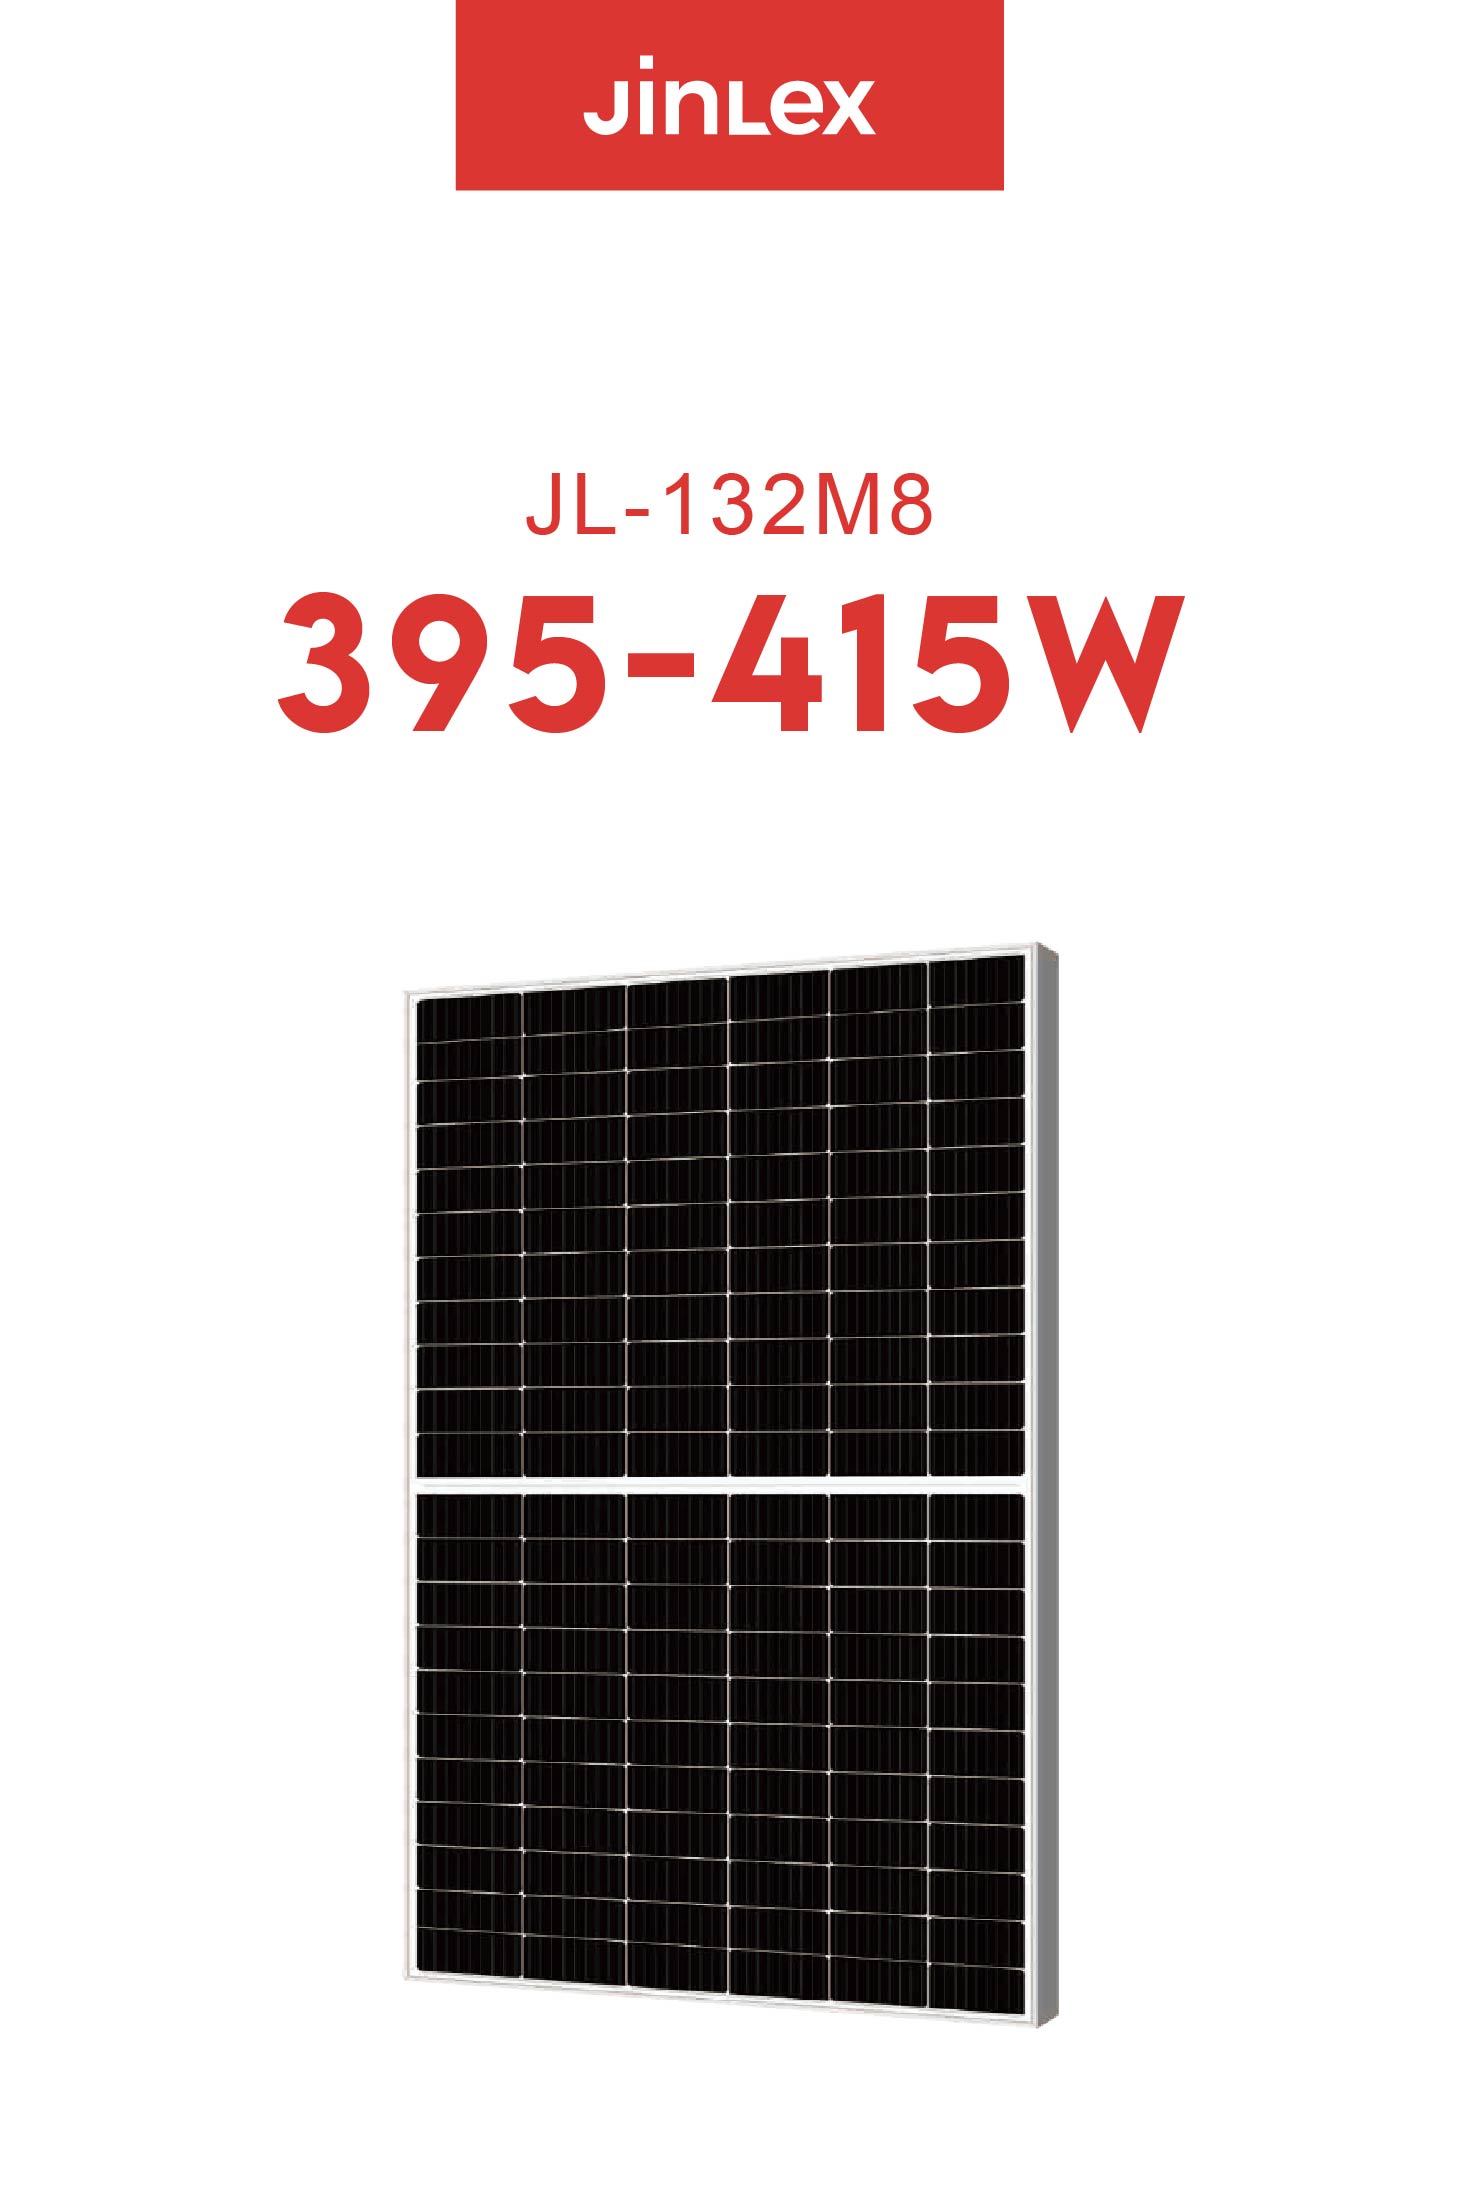 JL(395~415W)-132M8